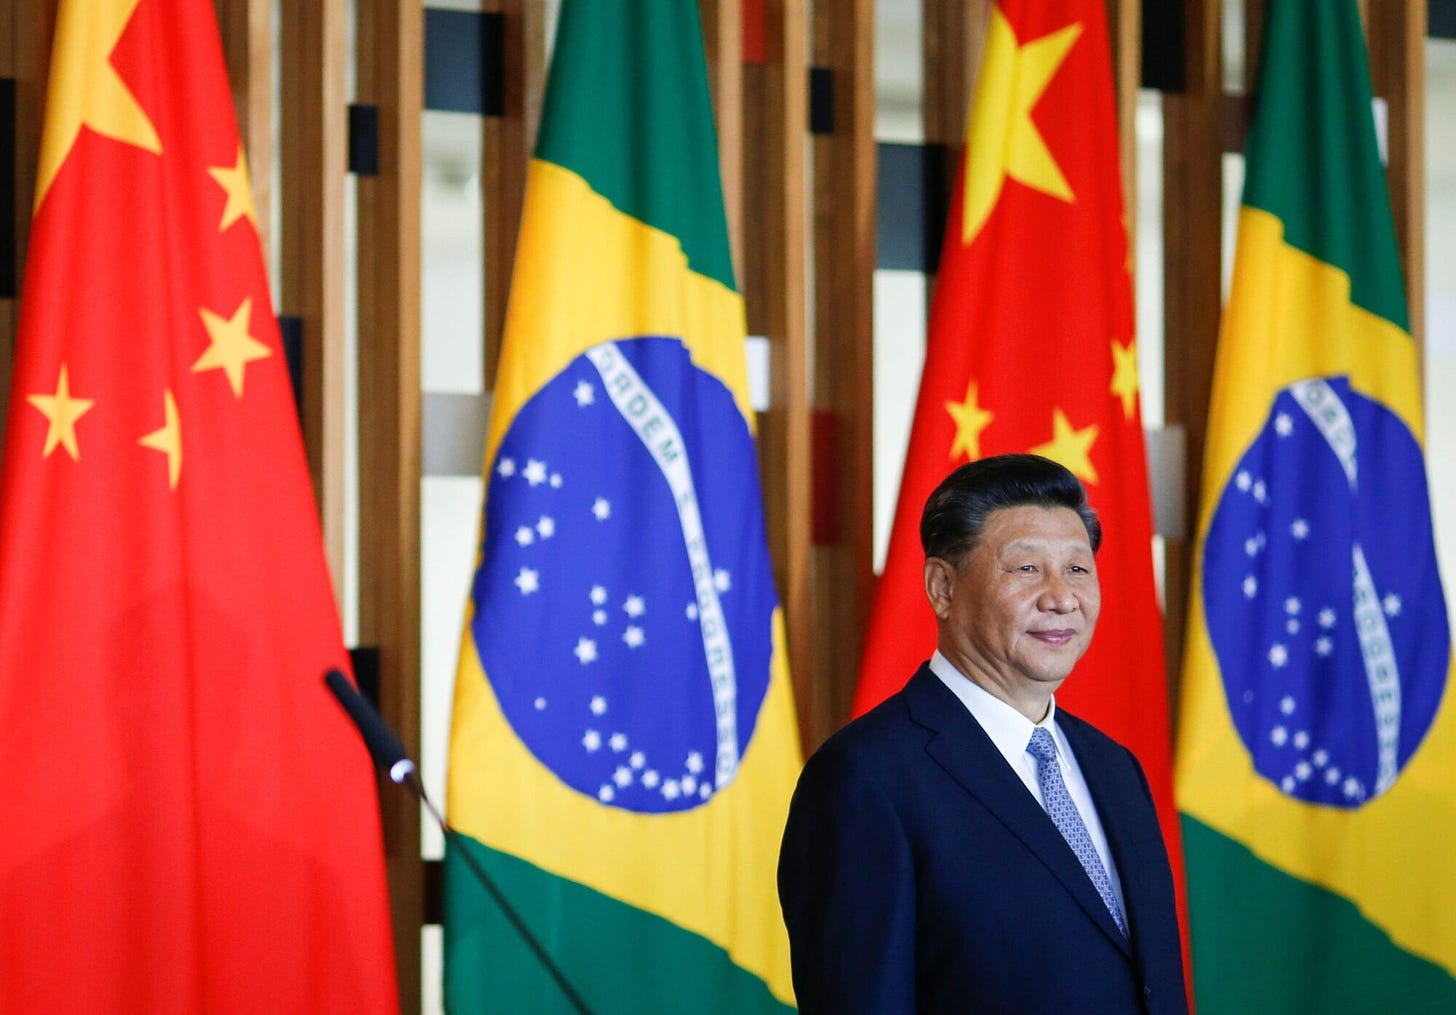 Le président Xi Jinping lors d'un événement bilatéral entre le Brésil et la Chine lors du sommet des BRICS à Brasilia, en novembre 2019. (Image : Ueslei Marcelino / Alamy)